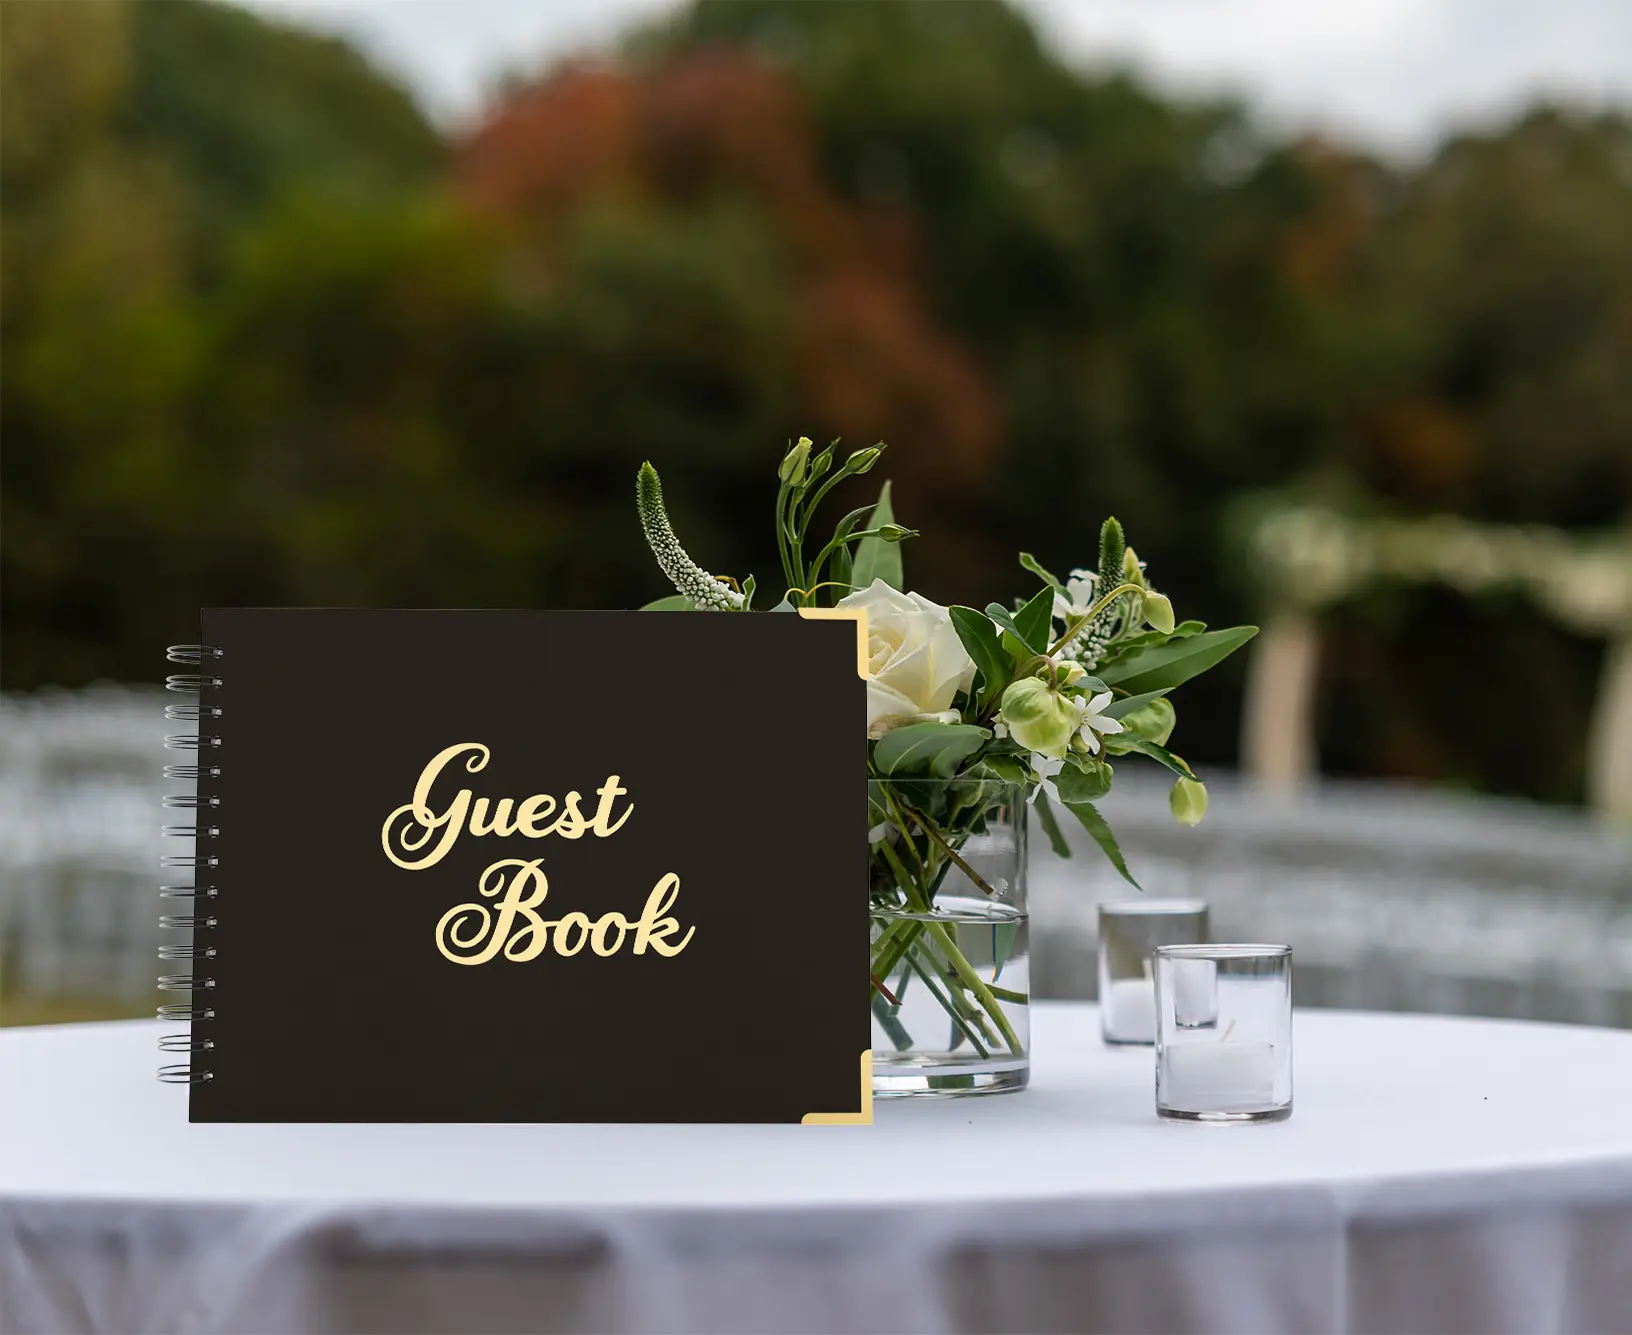 מסיבת חתונה חדשה nicro אספקה ספר אורחים חתונה מצורף כרטיס שחור סליל מקלחת ספר כלה ספר אורחים